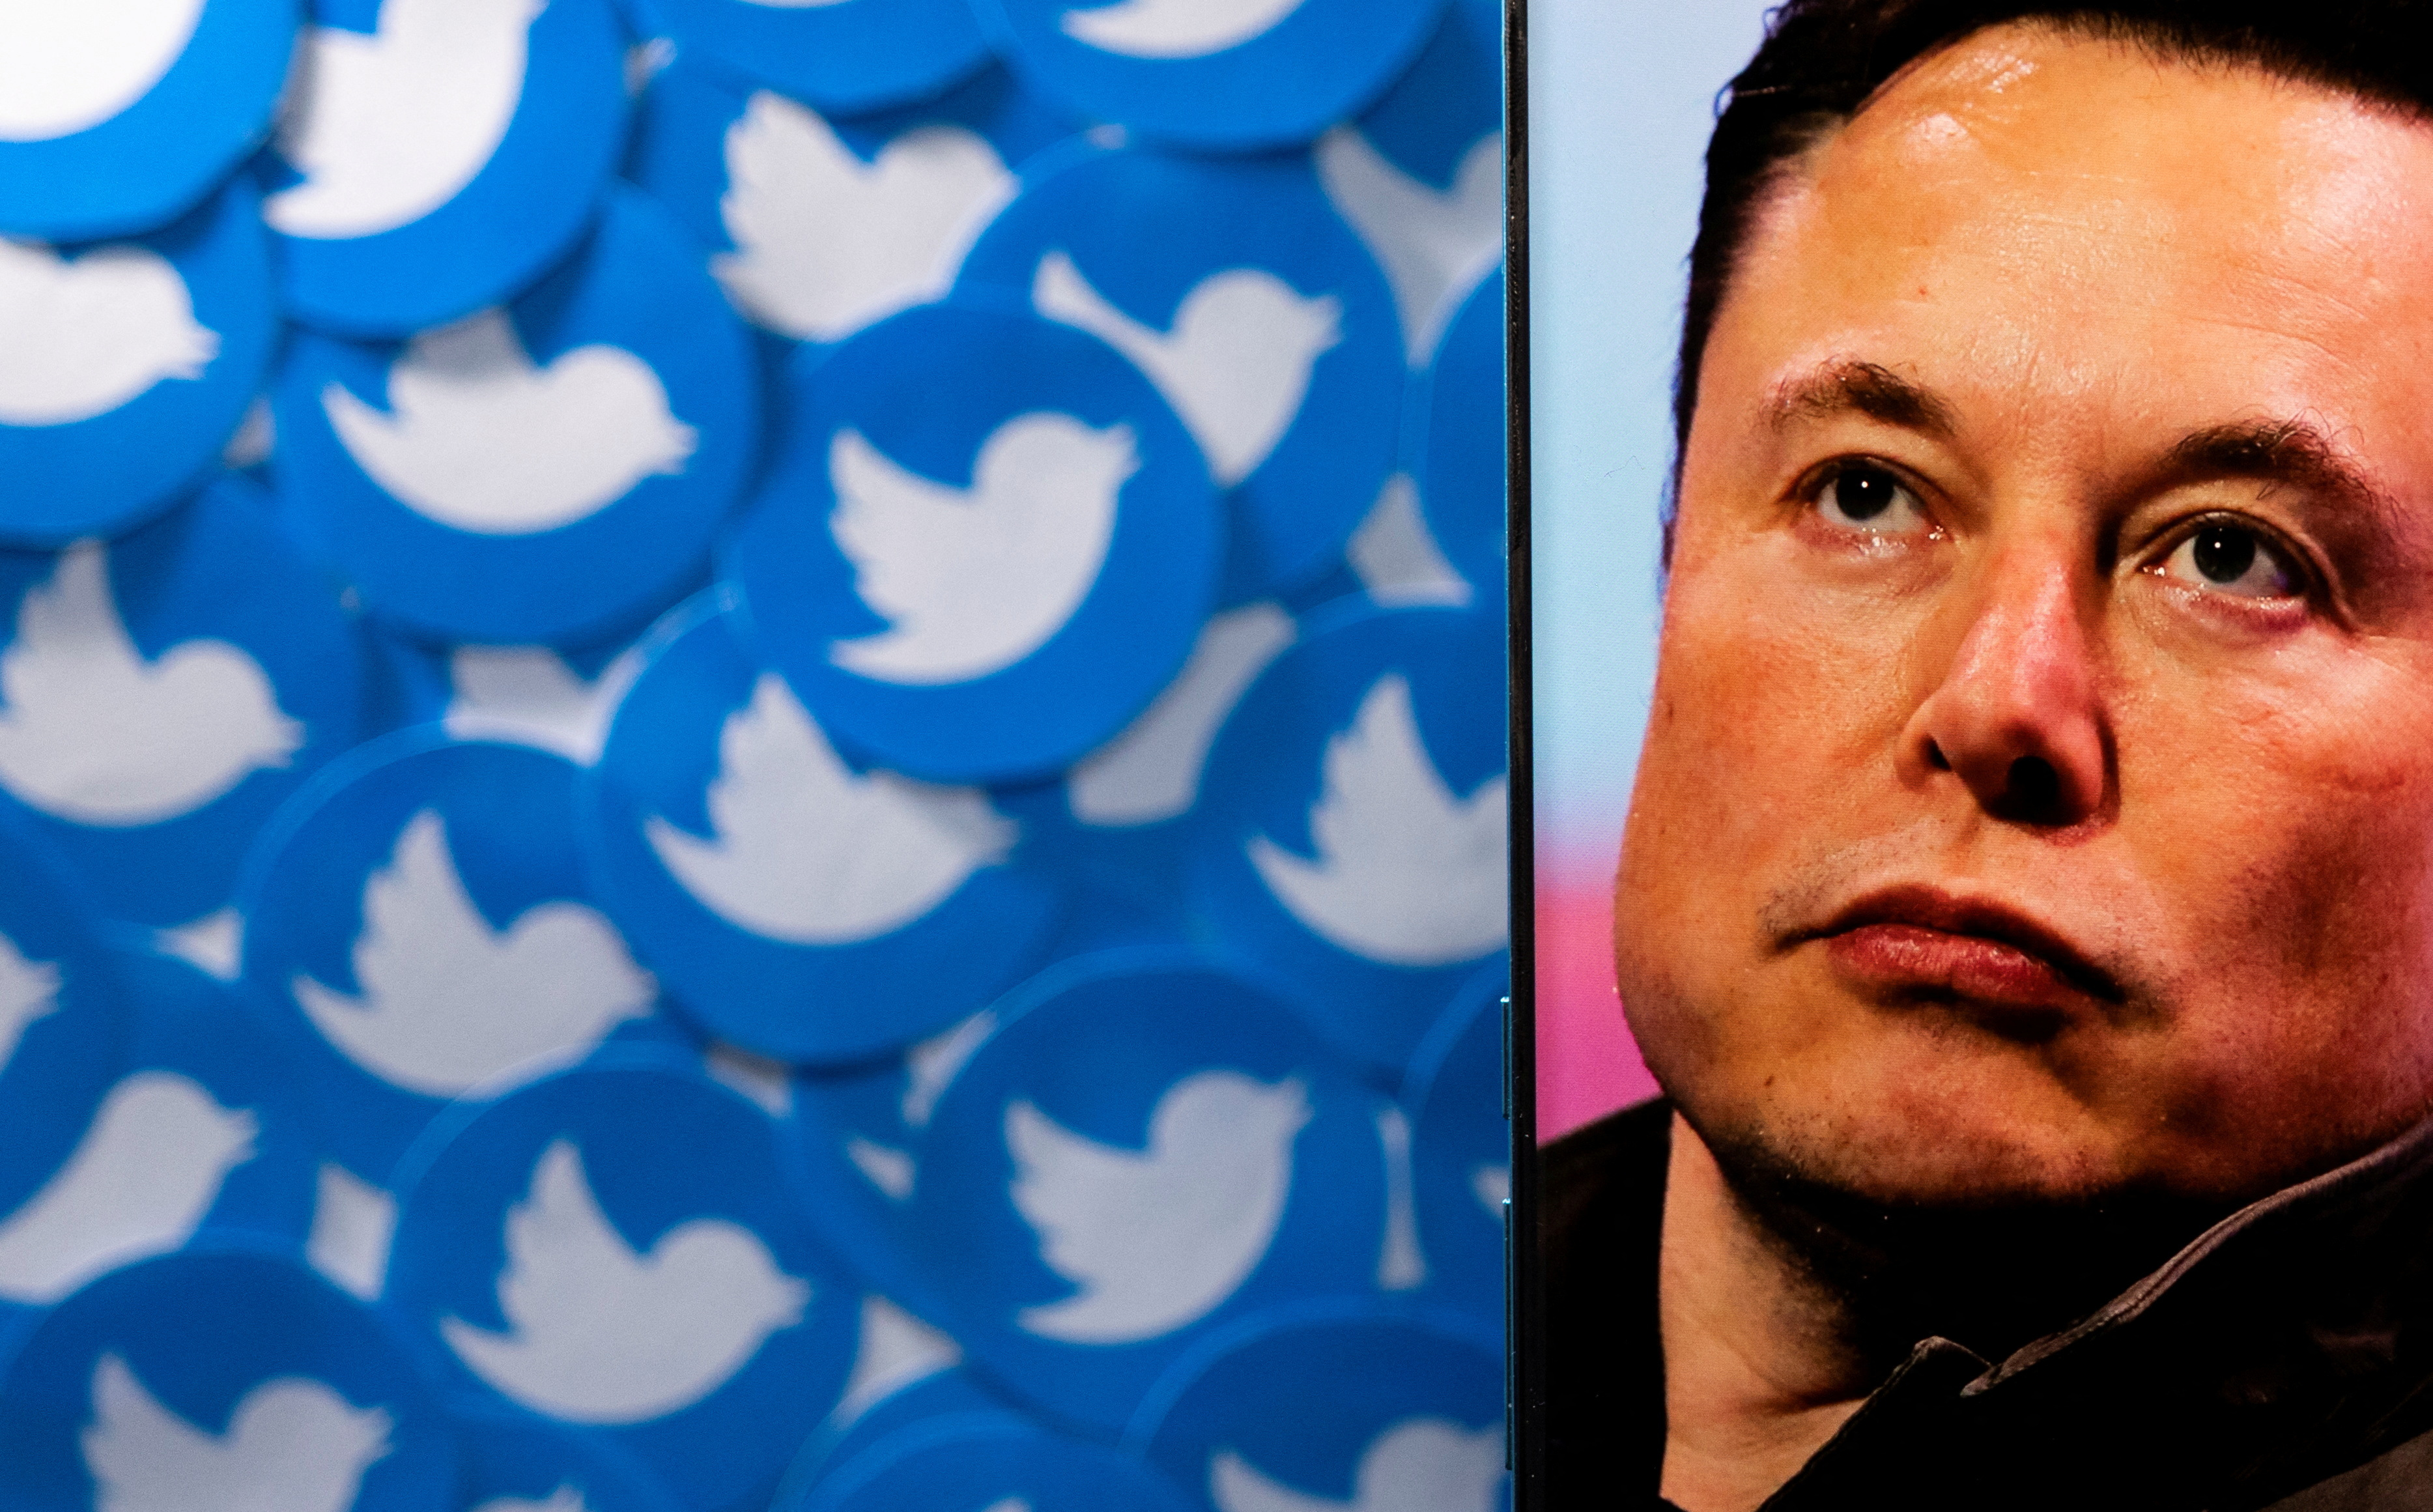 La ilustración muestra la imagen de Elon Musk en el teléfono inteligente y los logotipos de Twitter impresos.